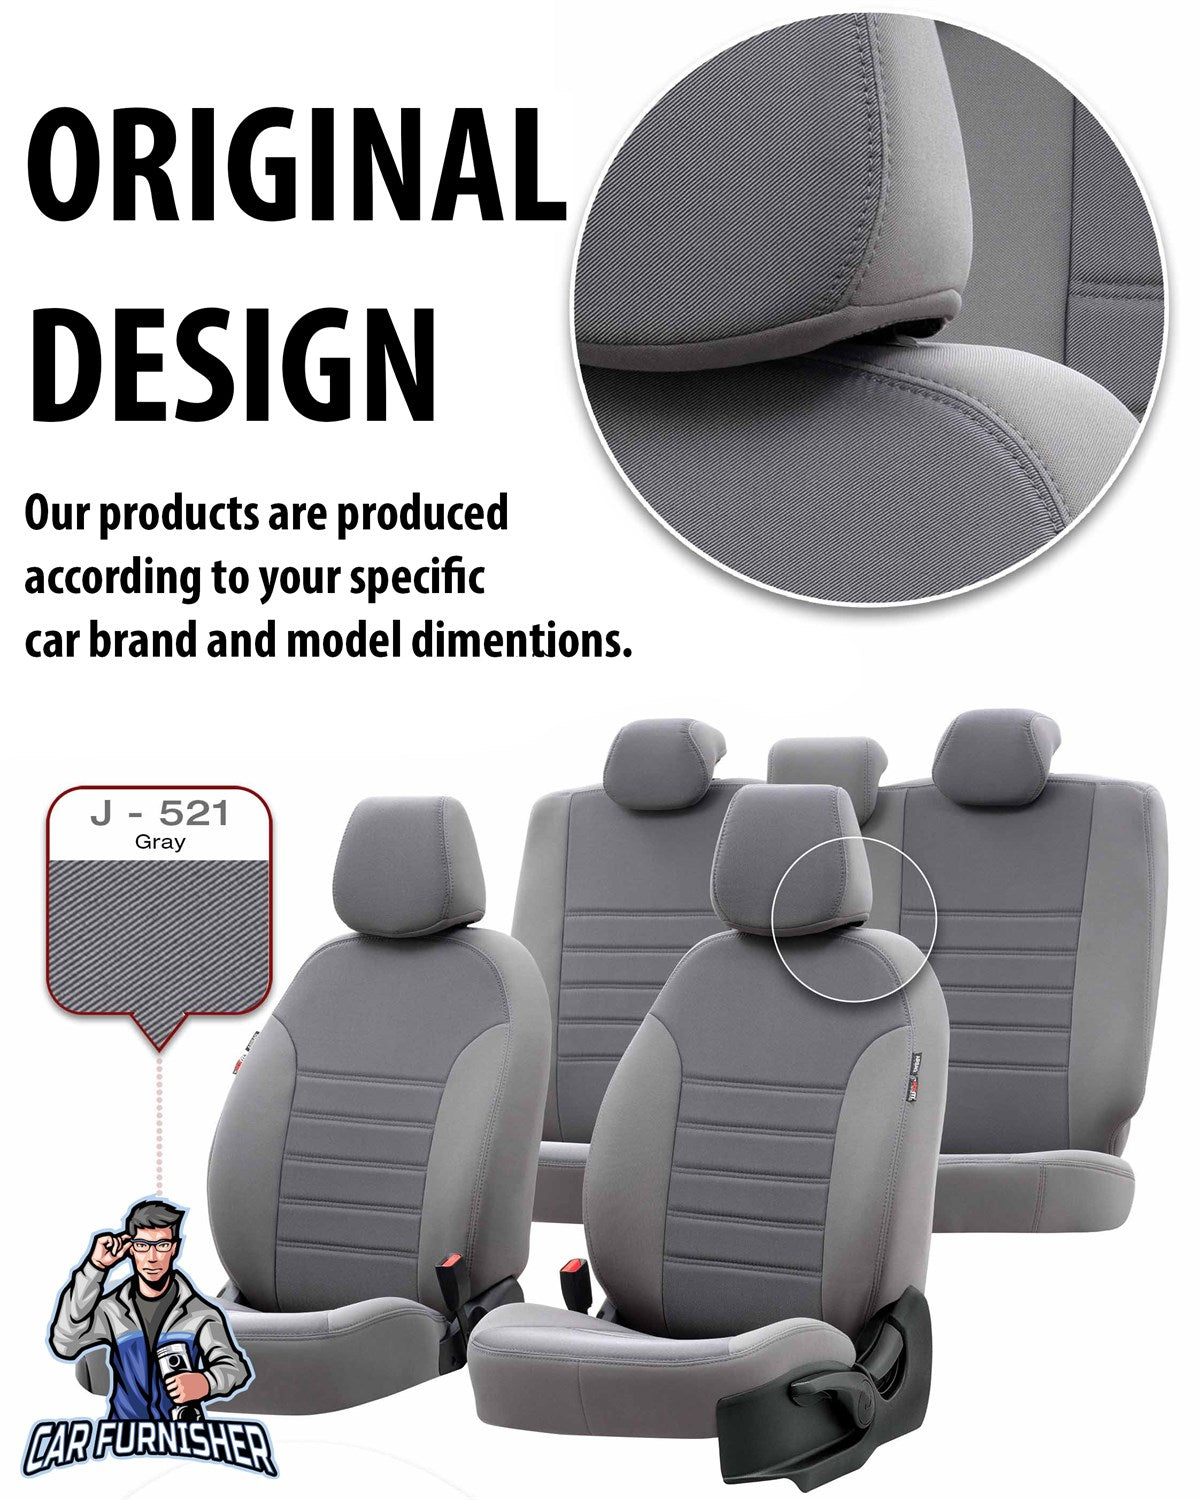 Honda CRV Seat Covers Original Jacquard Design Blue Jacquard Fabric